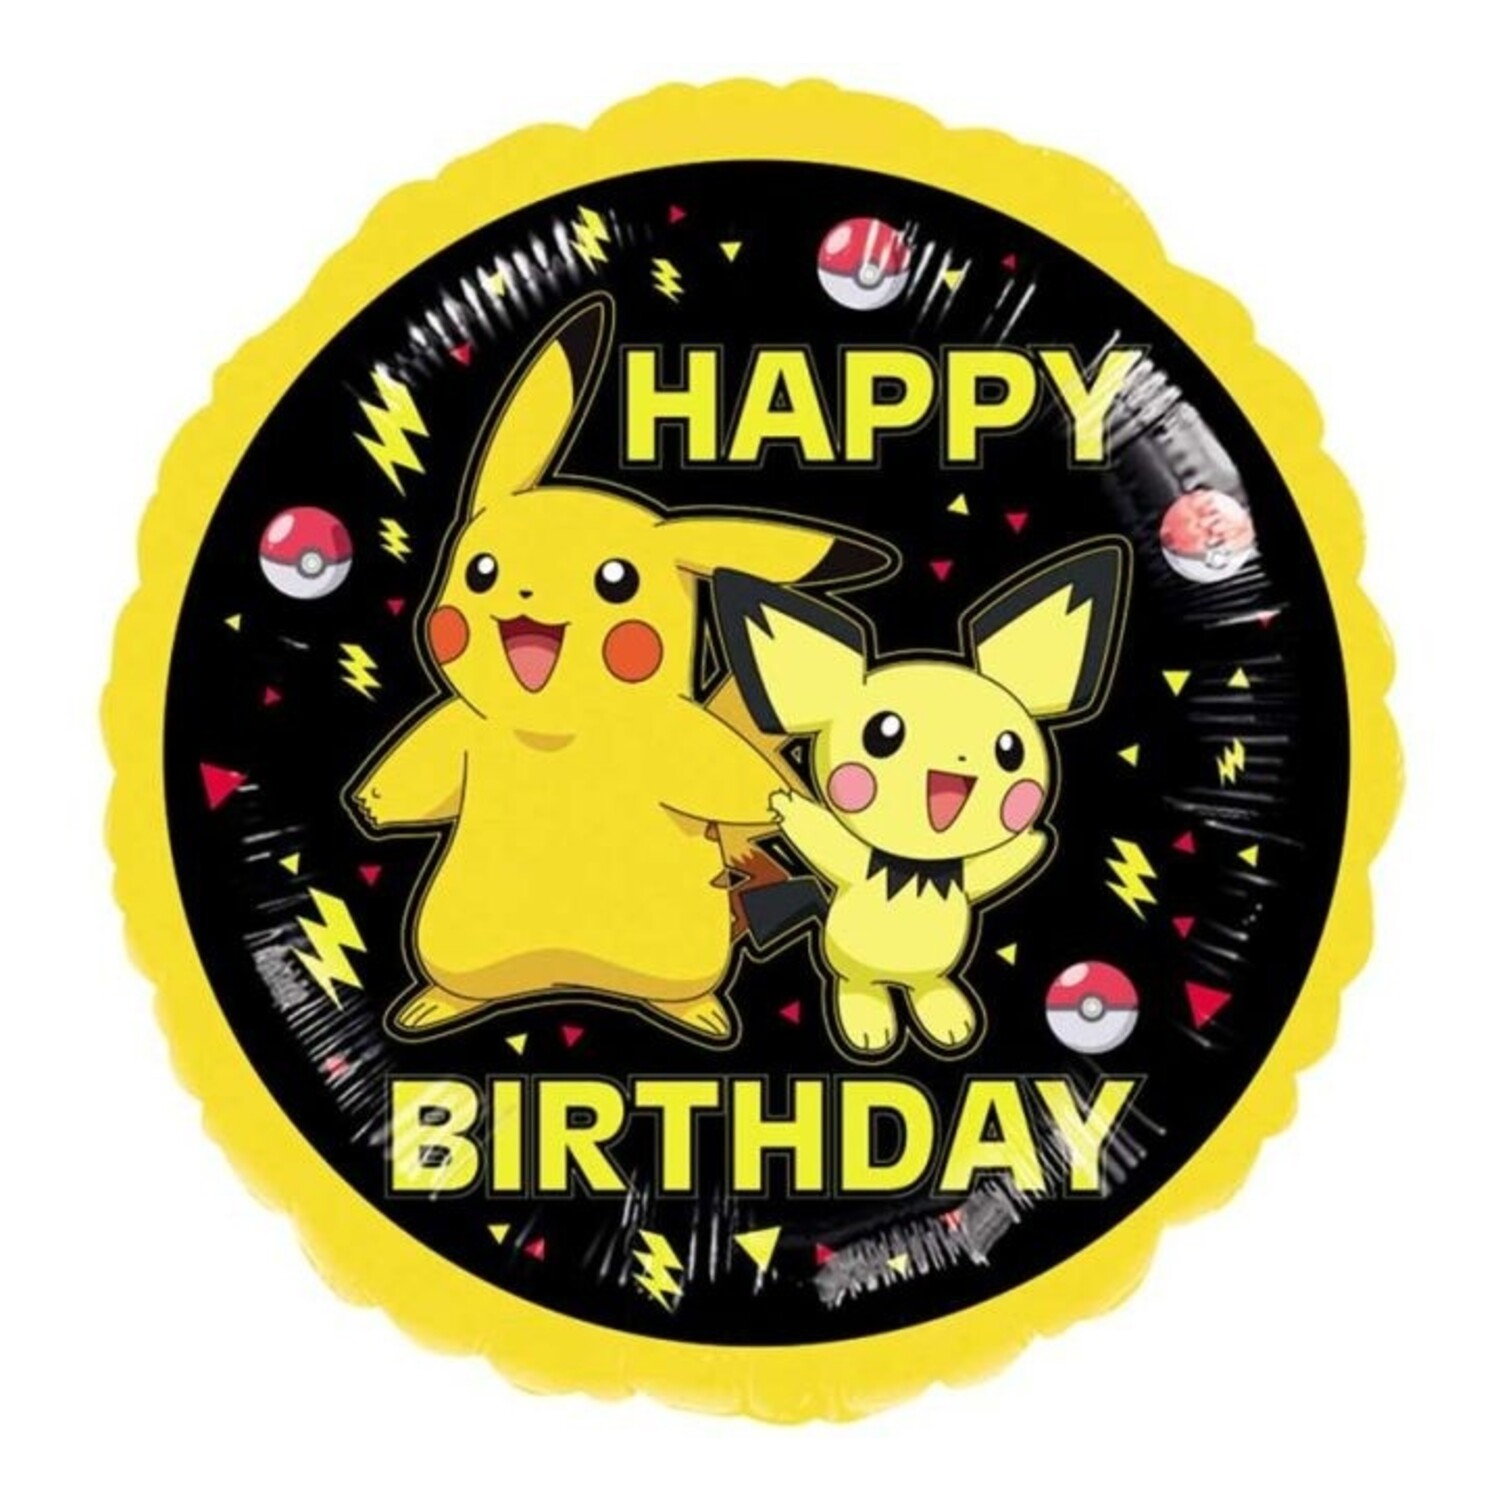 Vous voulez acheter un ballon Pokémon Pikachu chez Tuf-Tuf ? ✓en